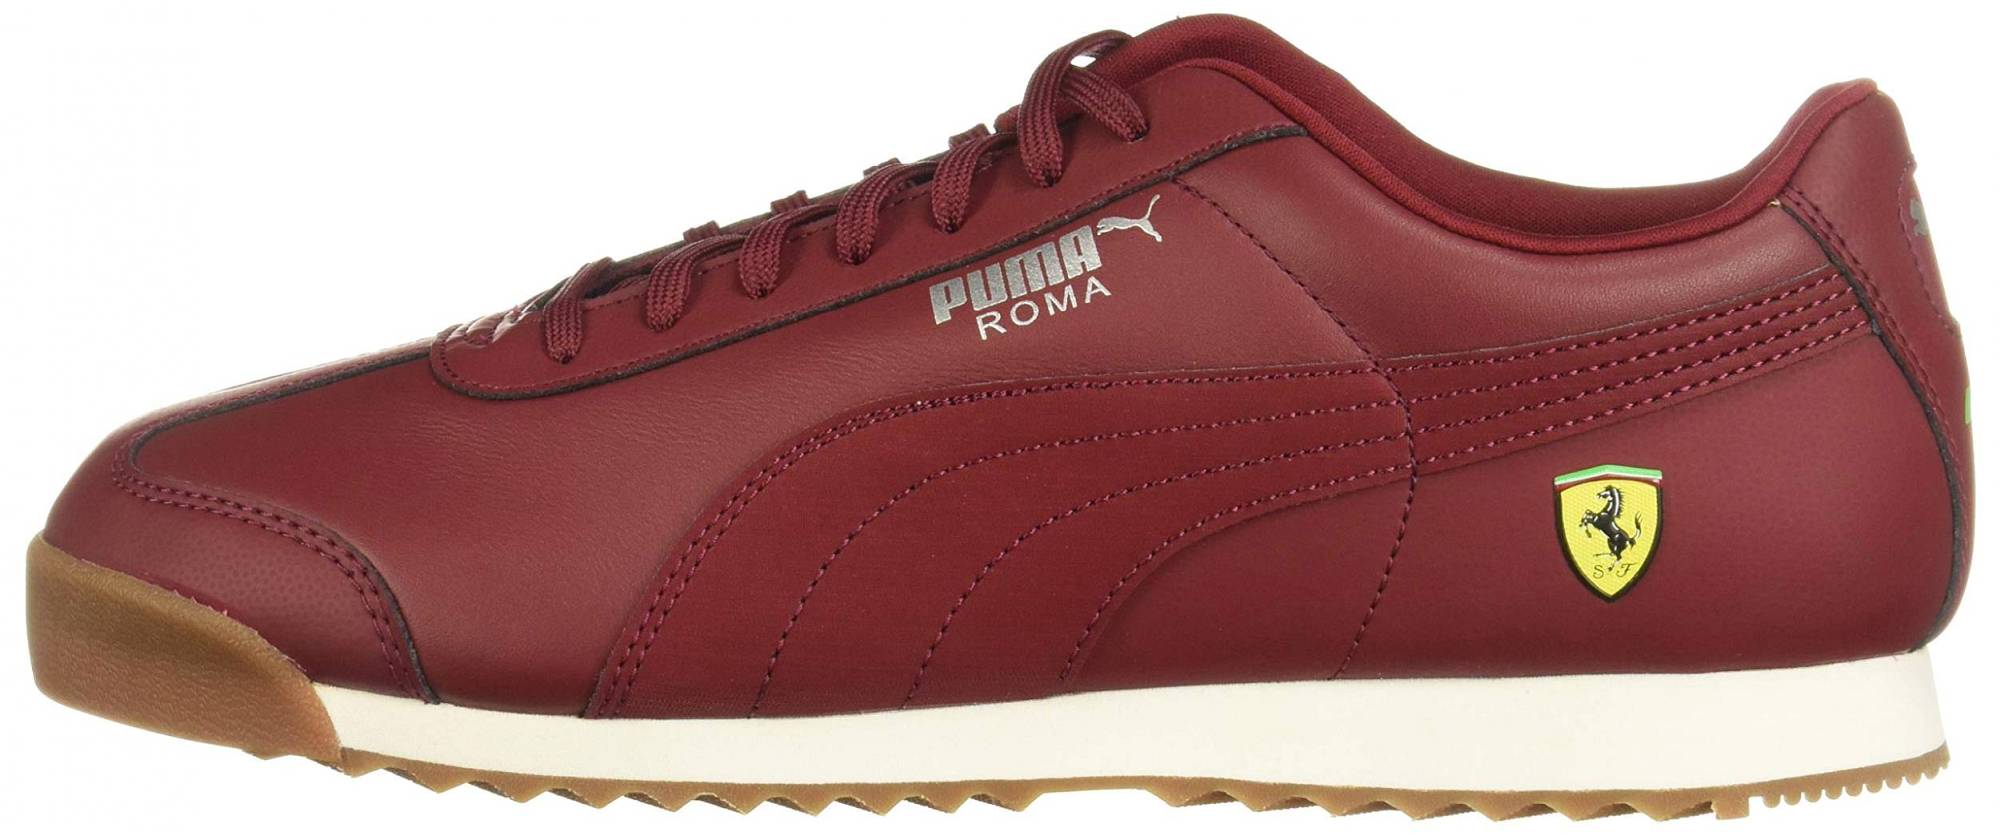 Puma Ferrari Roma – Shoes Reviews & Reasons To Buy